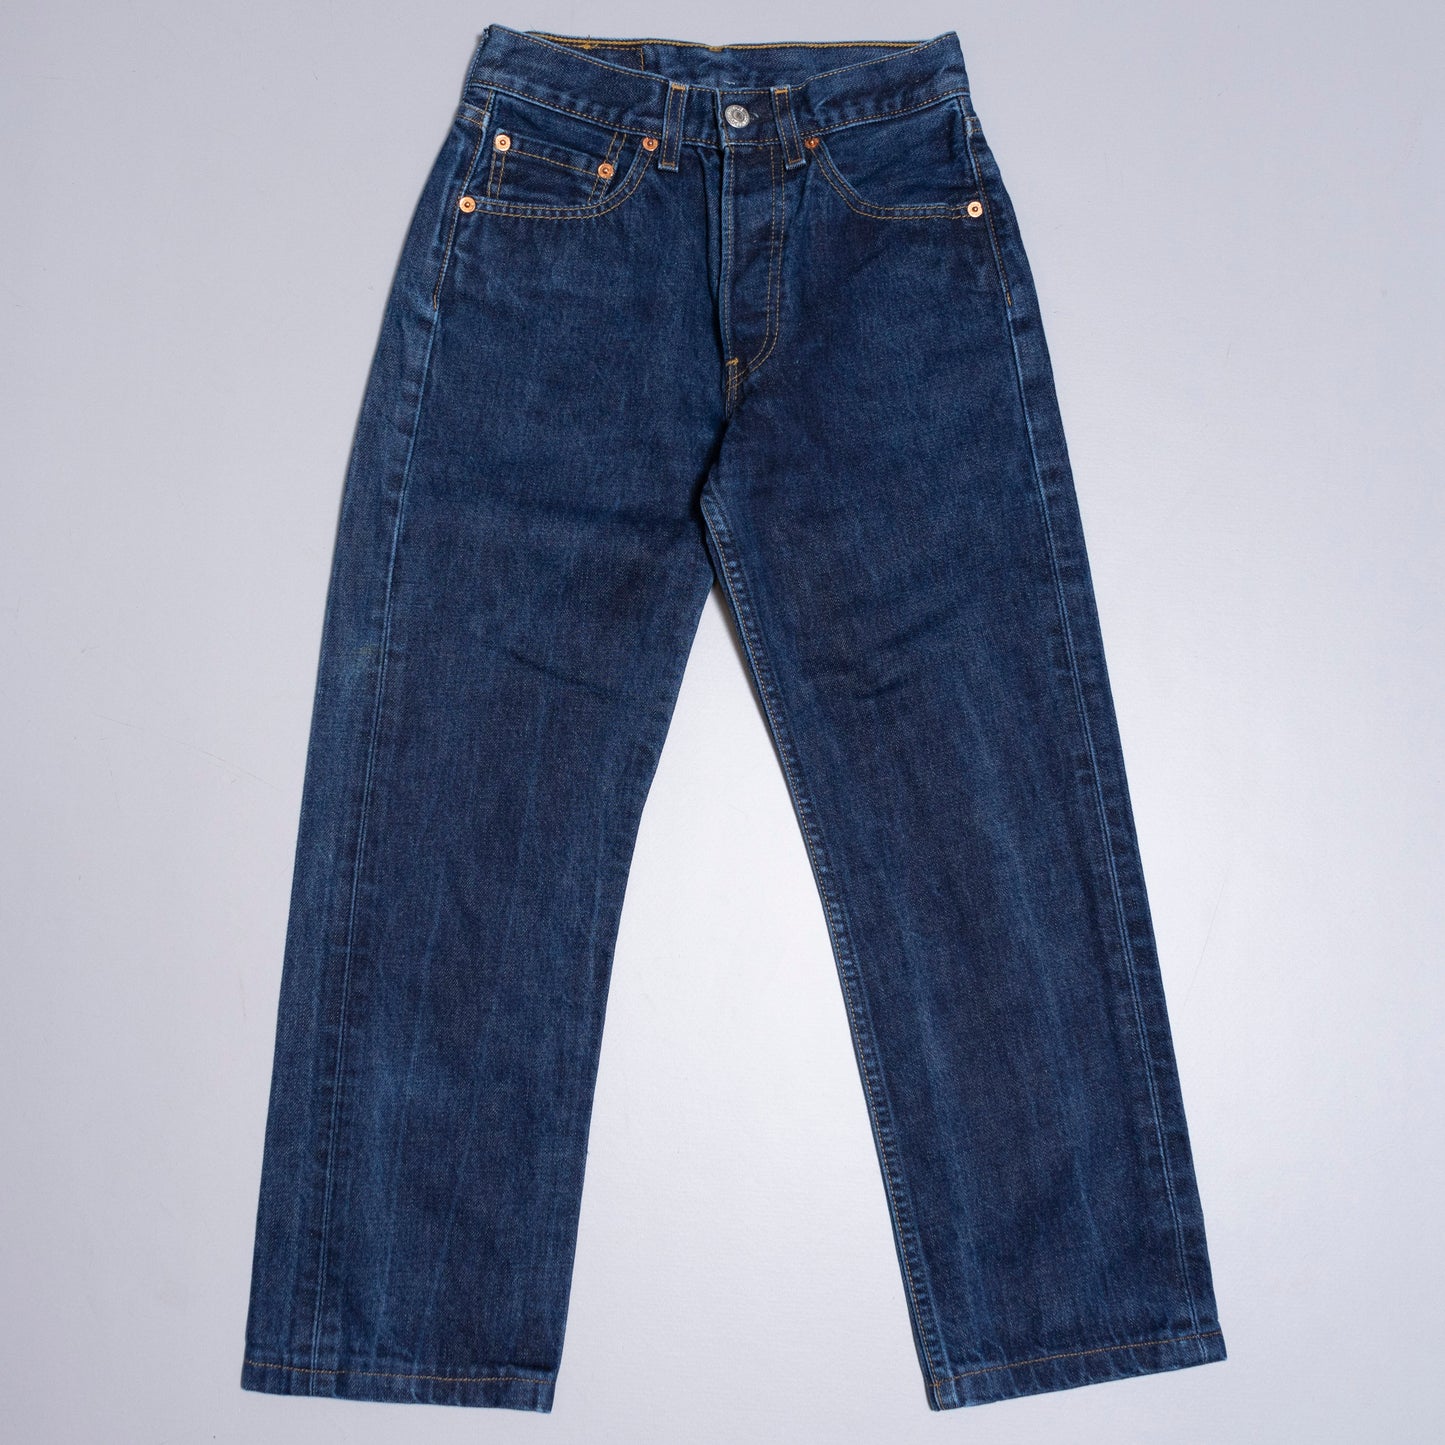 Levis 501 Jeans, 26/26